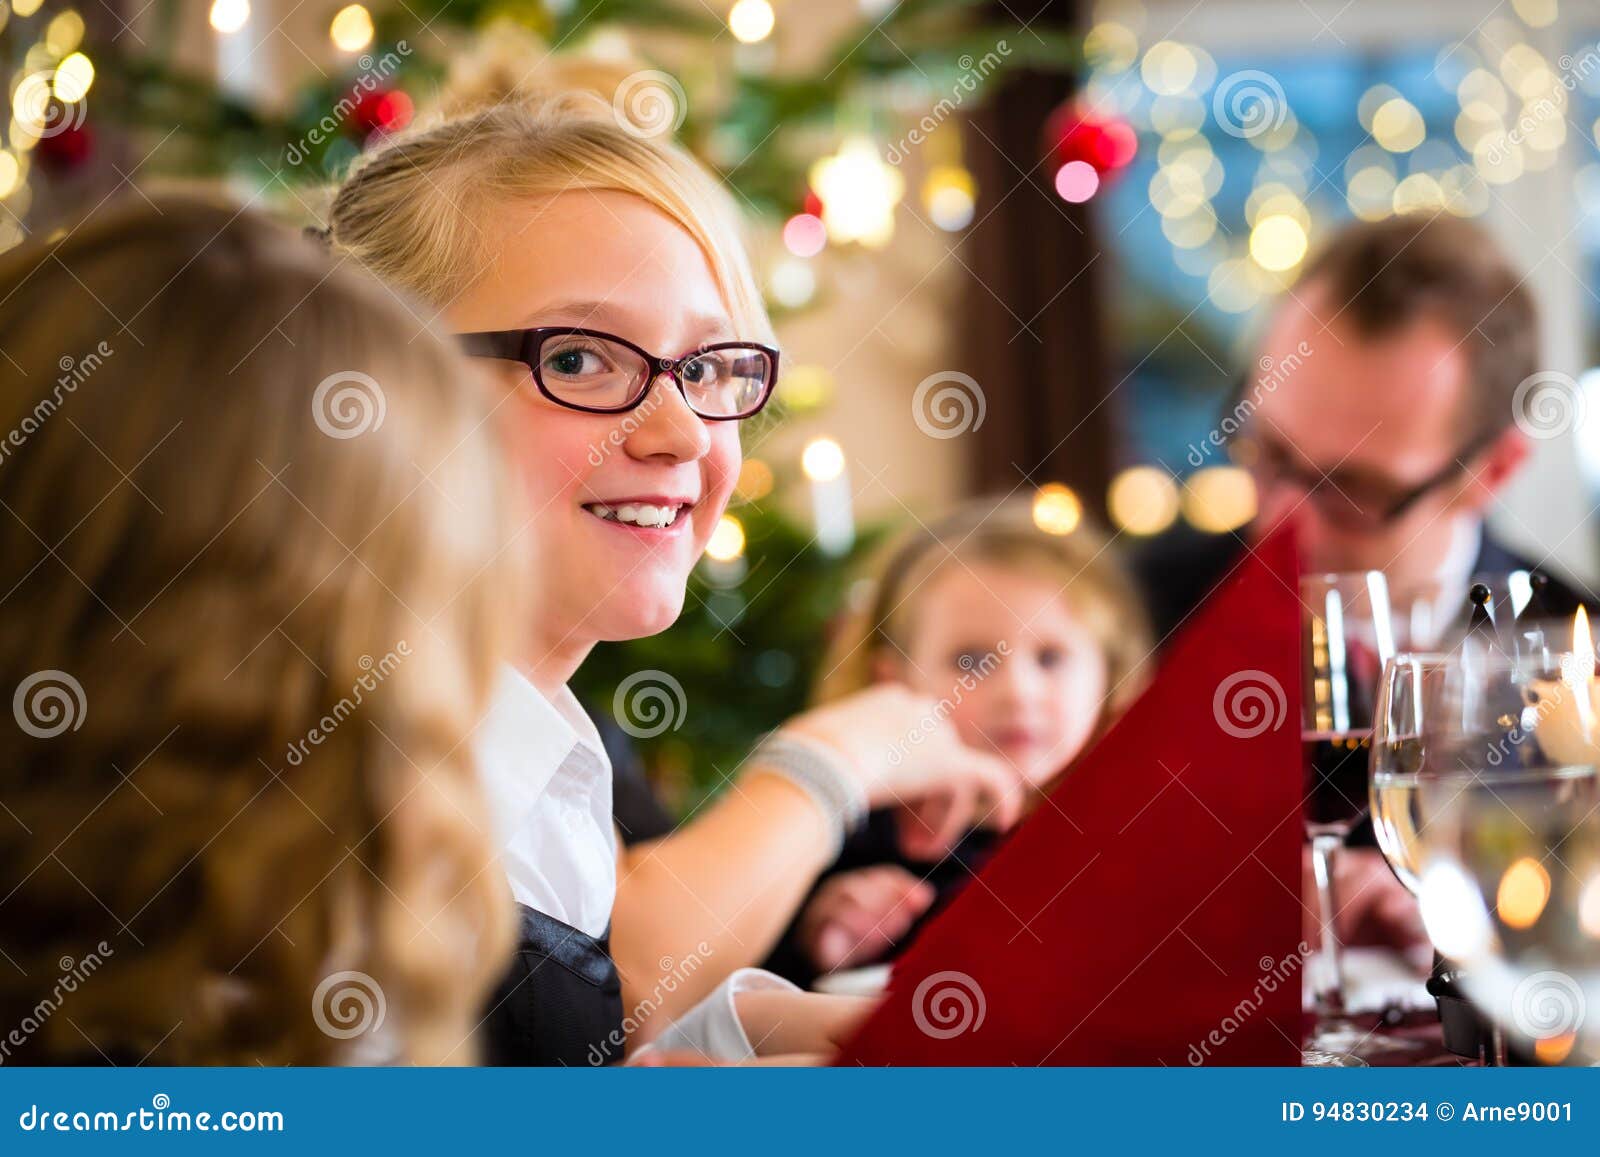 Family Celebrating Christmas Dinner Stock Photo Image Of Glasses Dinner 94830234